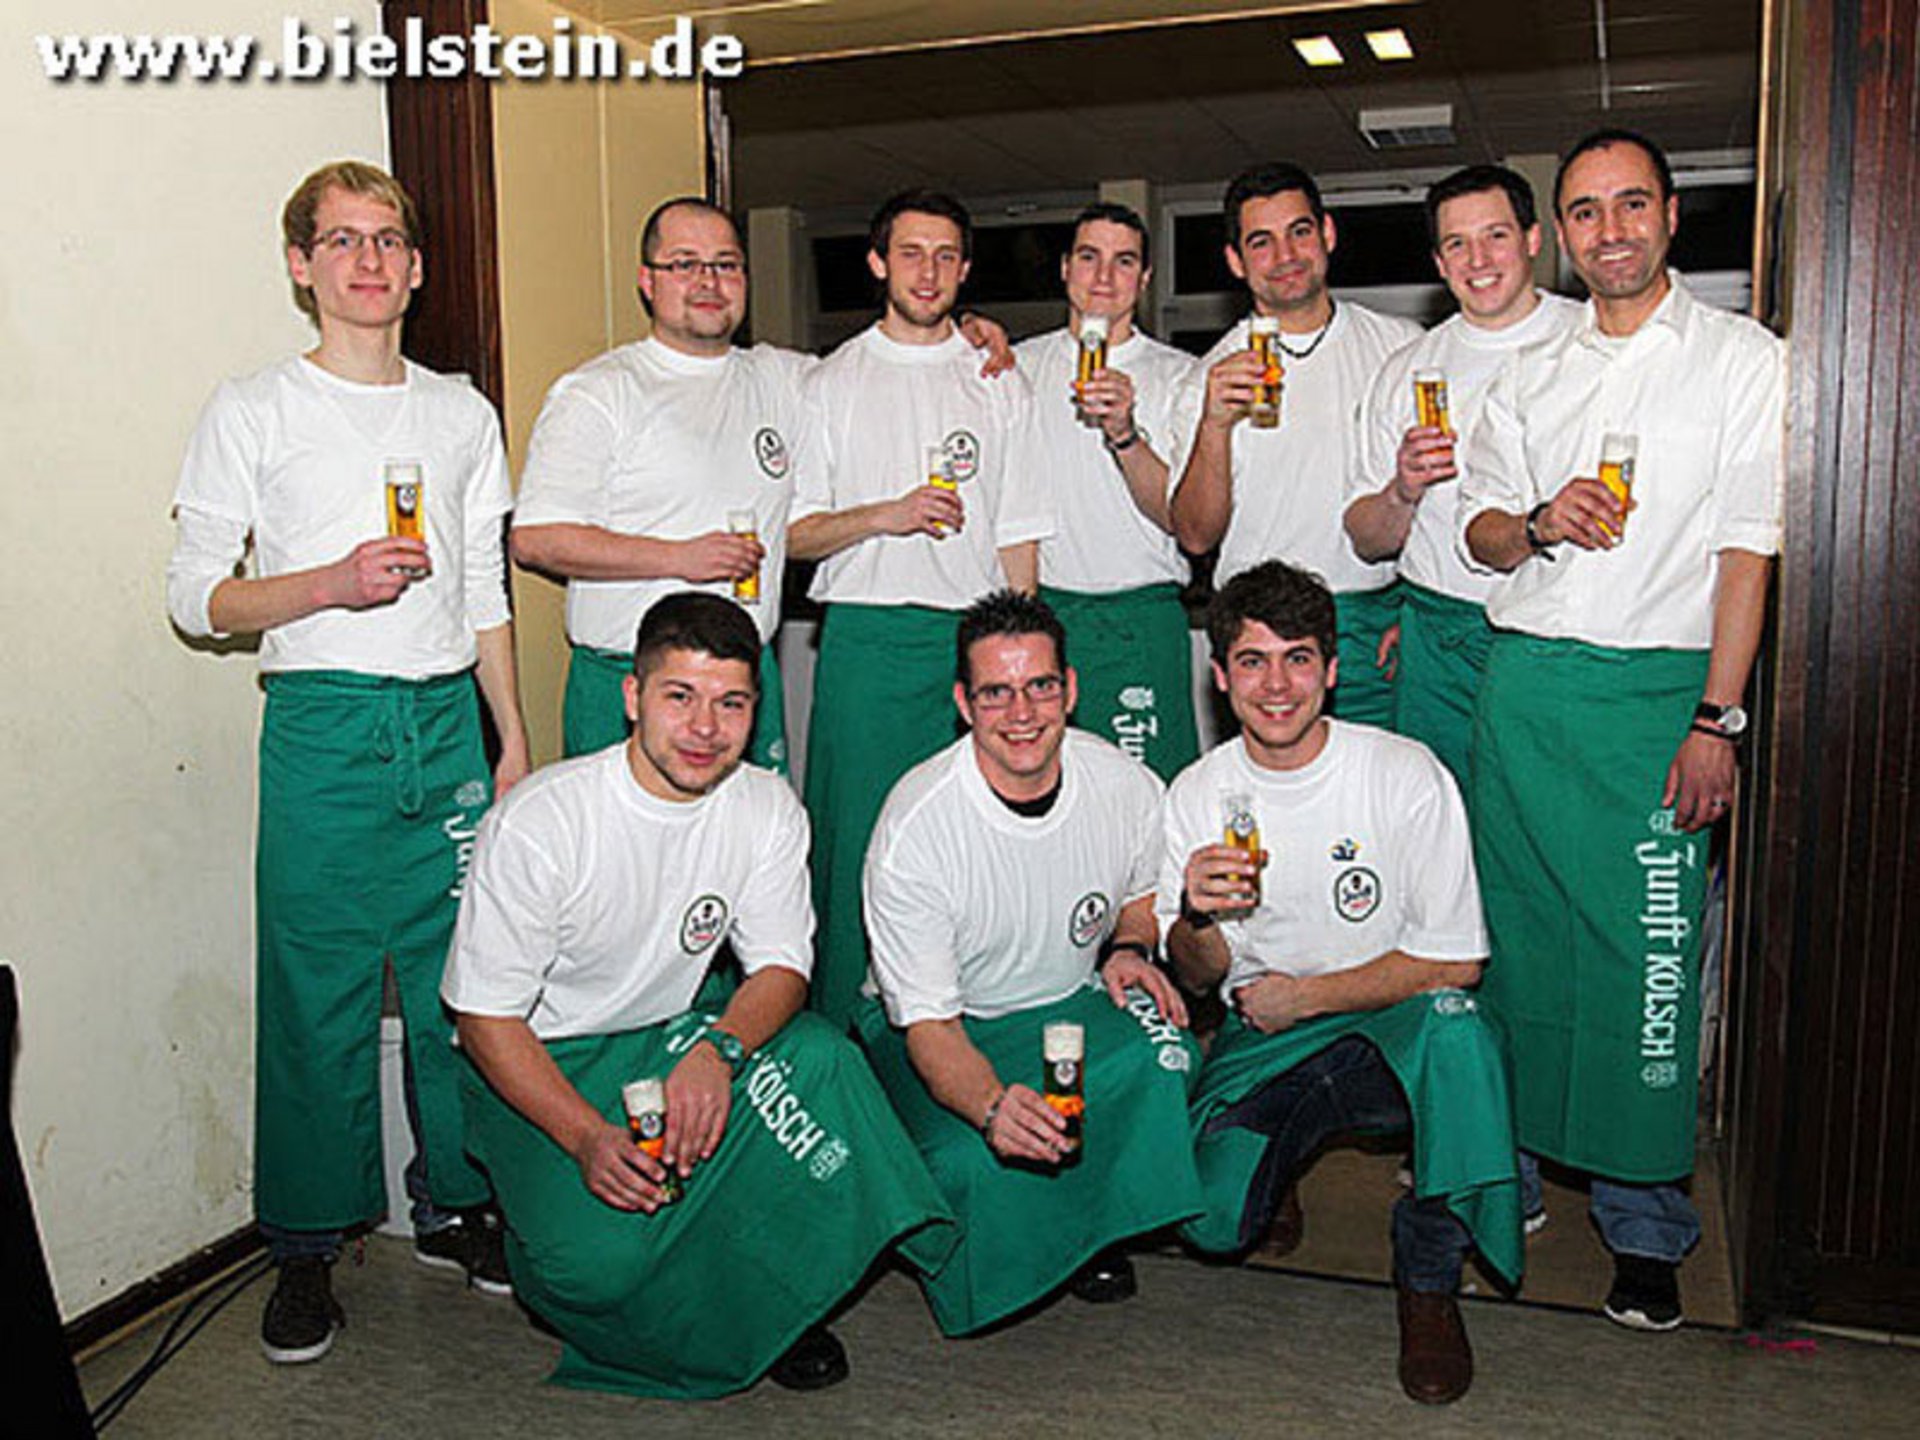 Das Kellner-Team des BSV Bielstein auf der Kostümsitzung des KV Bielstein